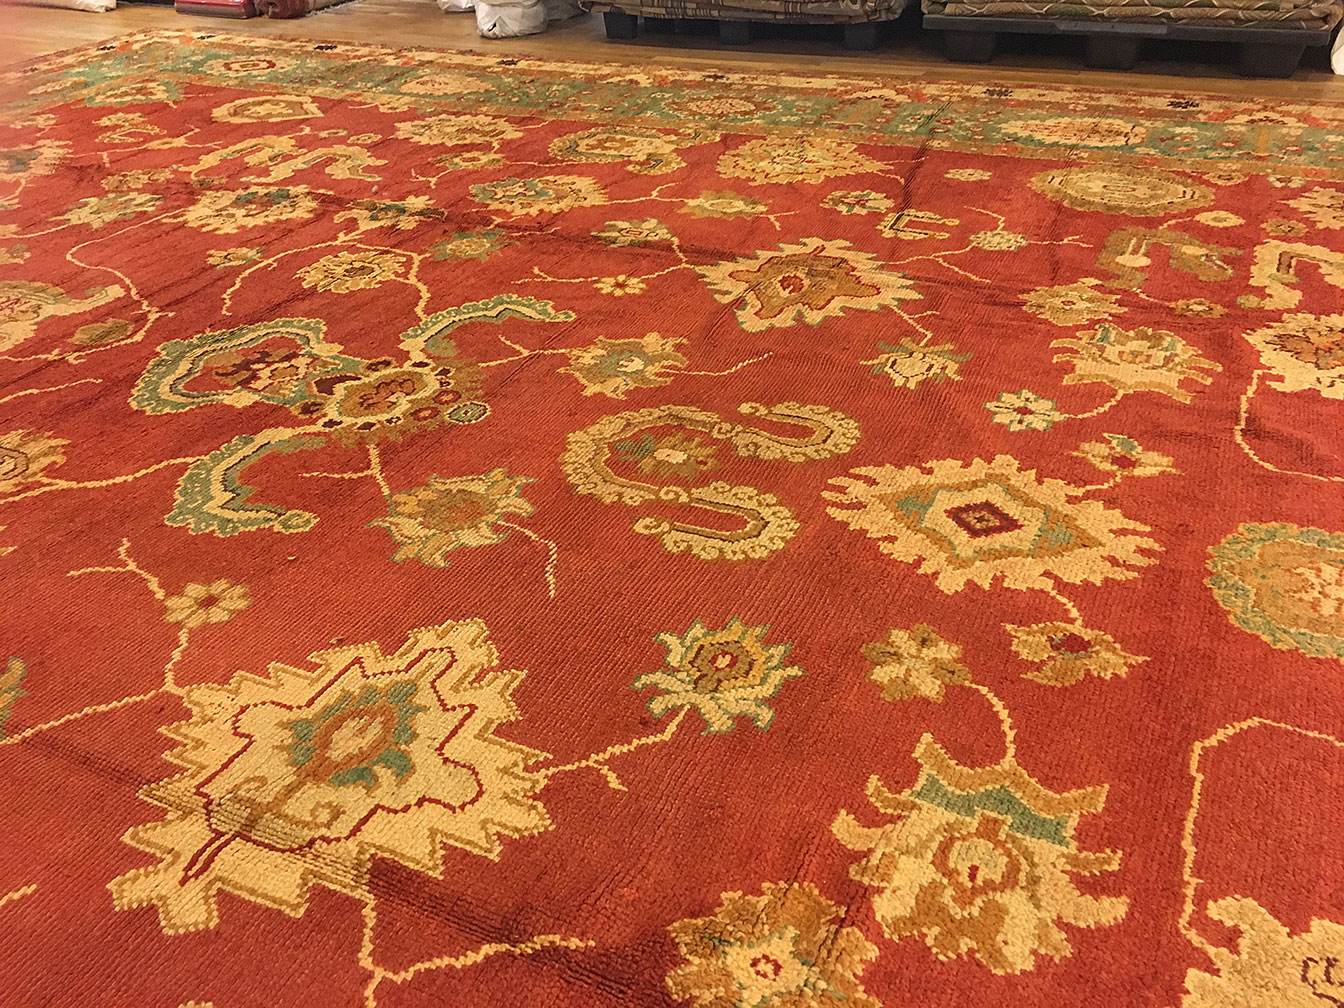 Antique oushak Carpet - # 50115